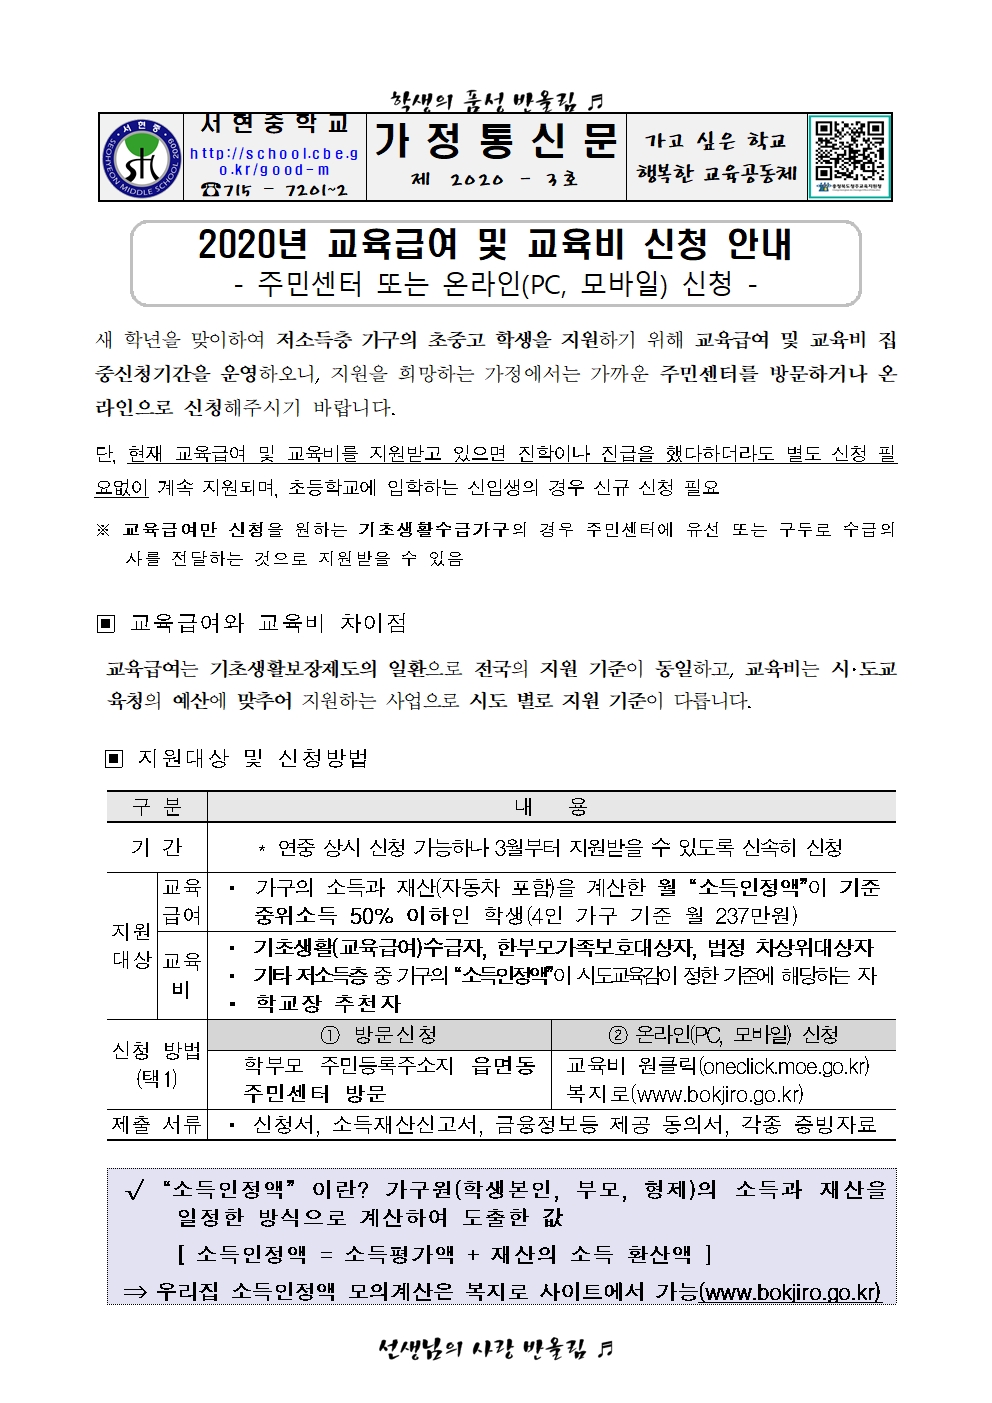 2020. 교육급여 및 교육비 신청 안내 가정통신문001